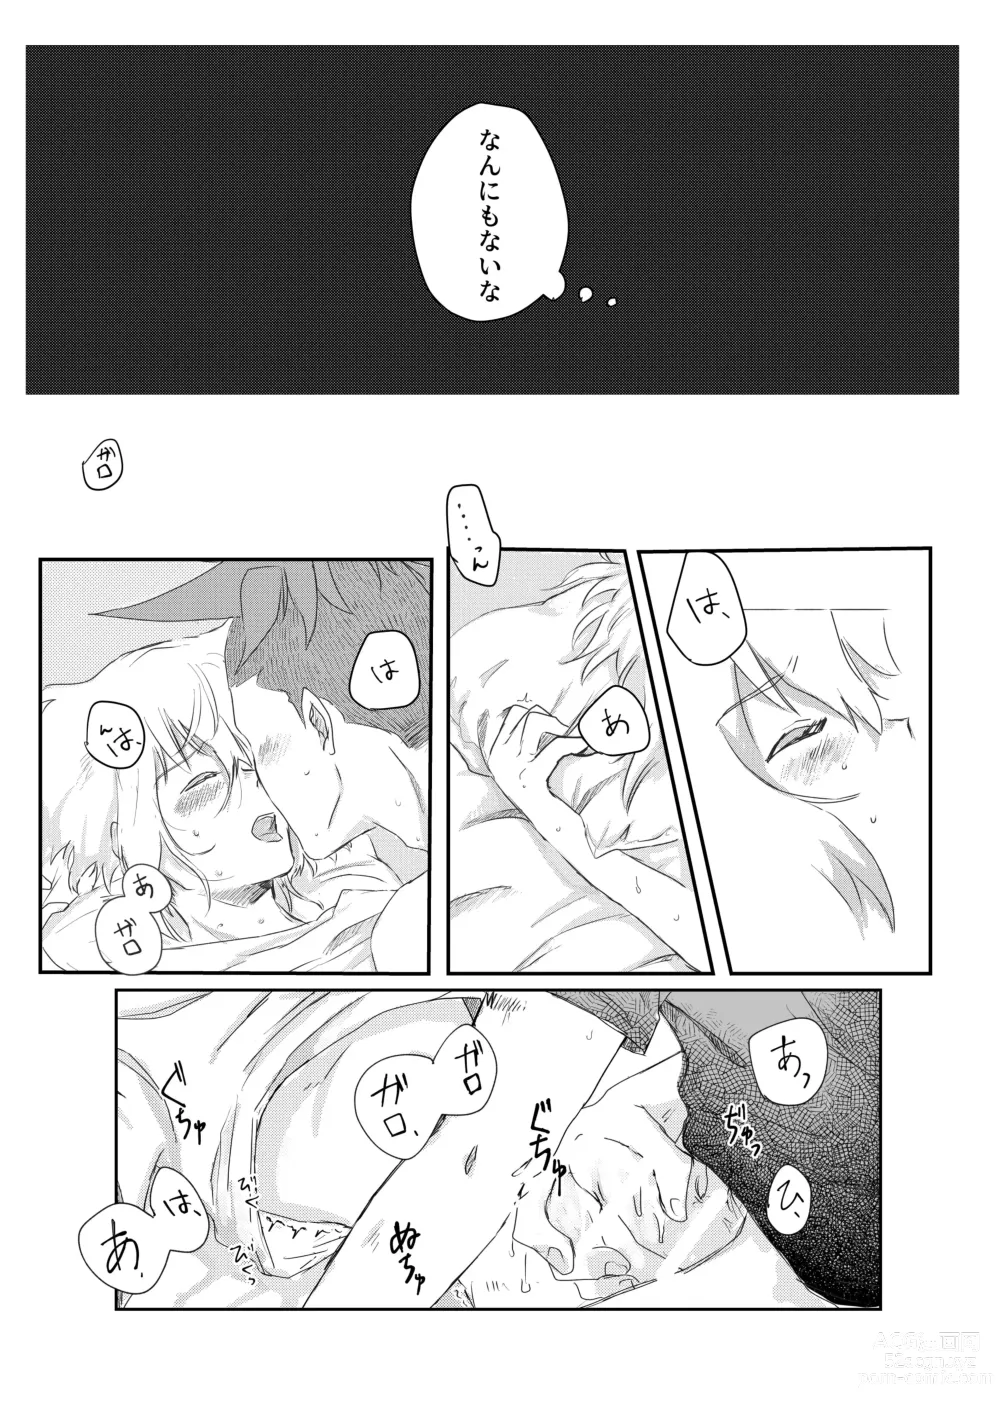 Page 11 of doujinshi Ohayou, Oyasumi, Mata Ashita.